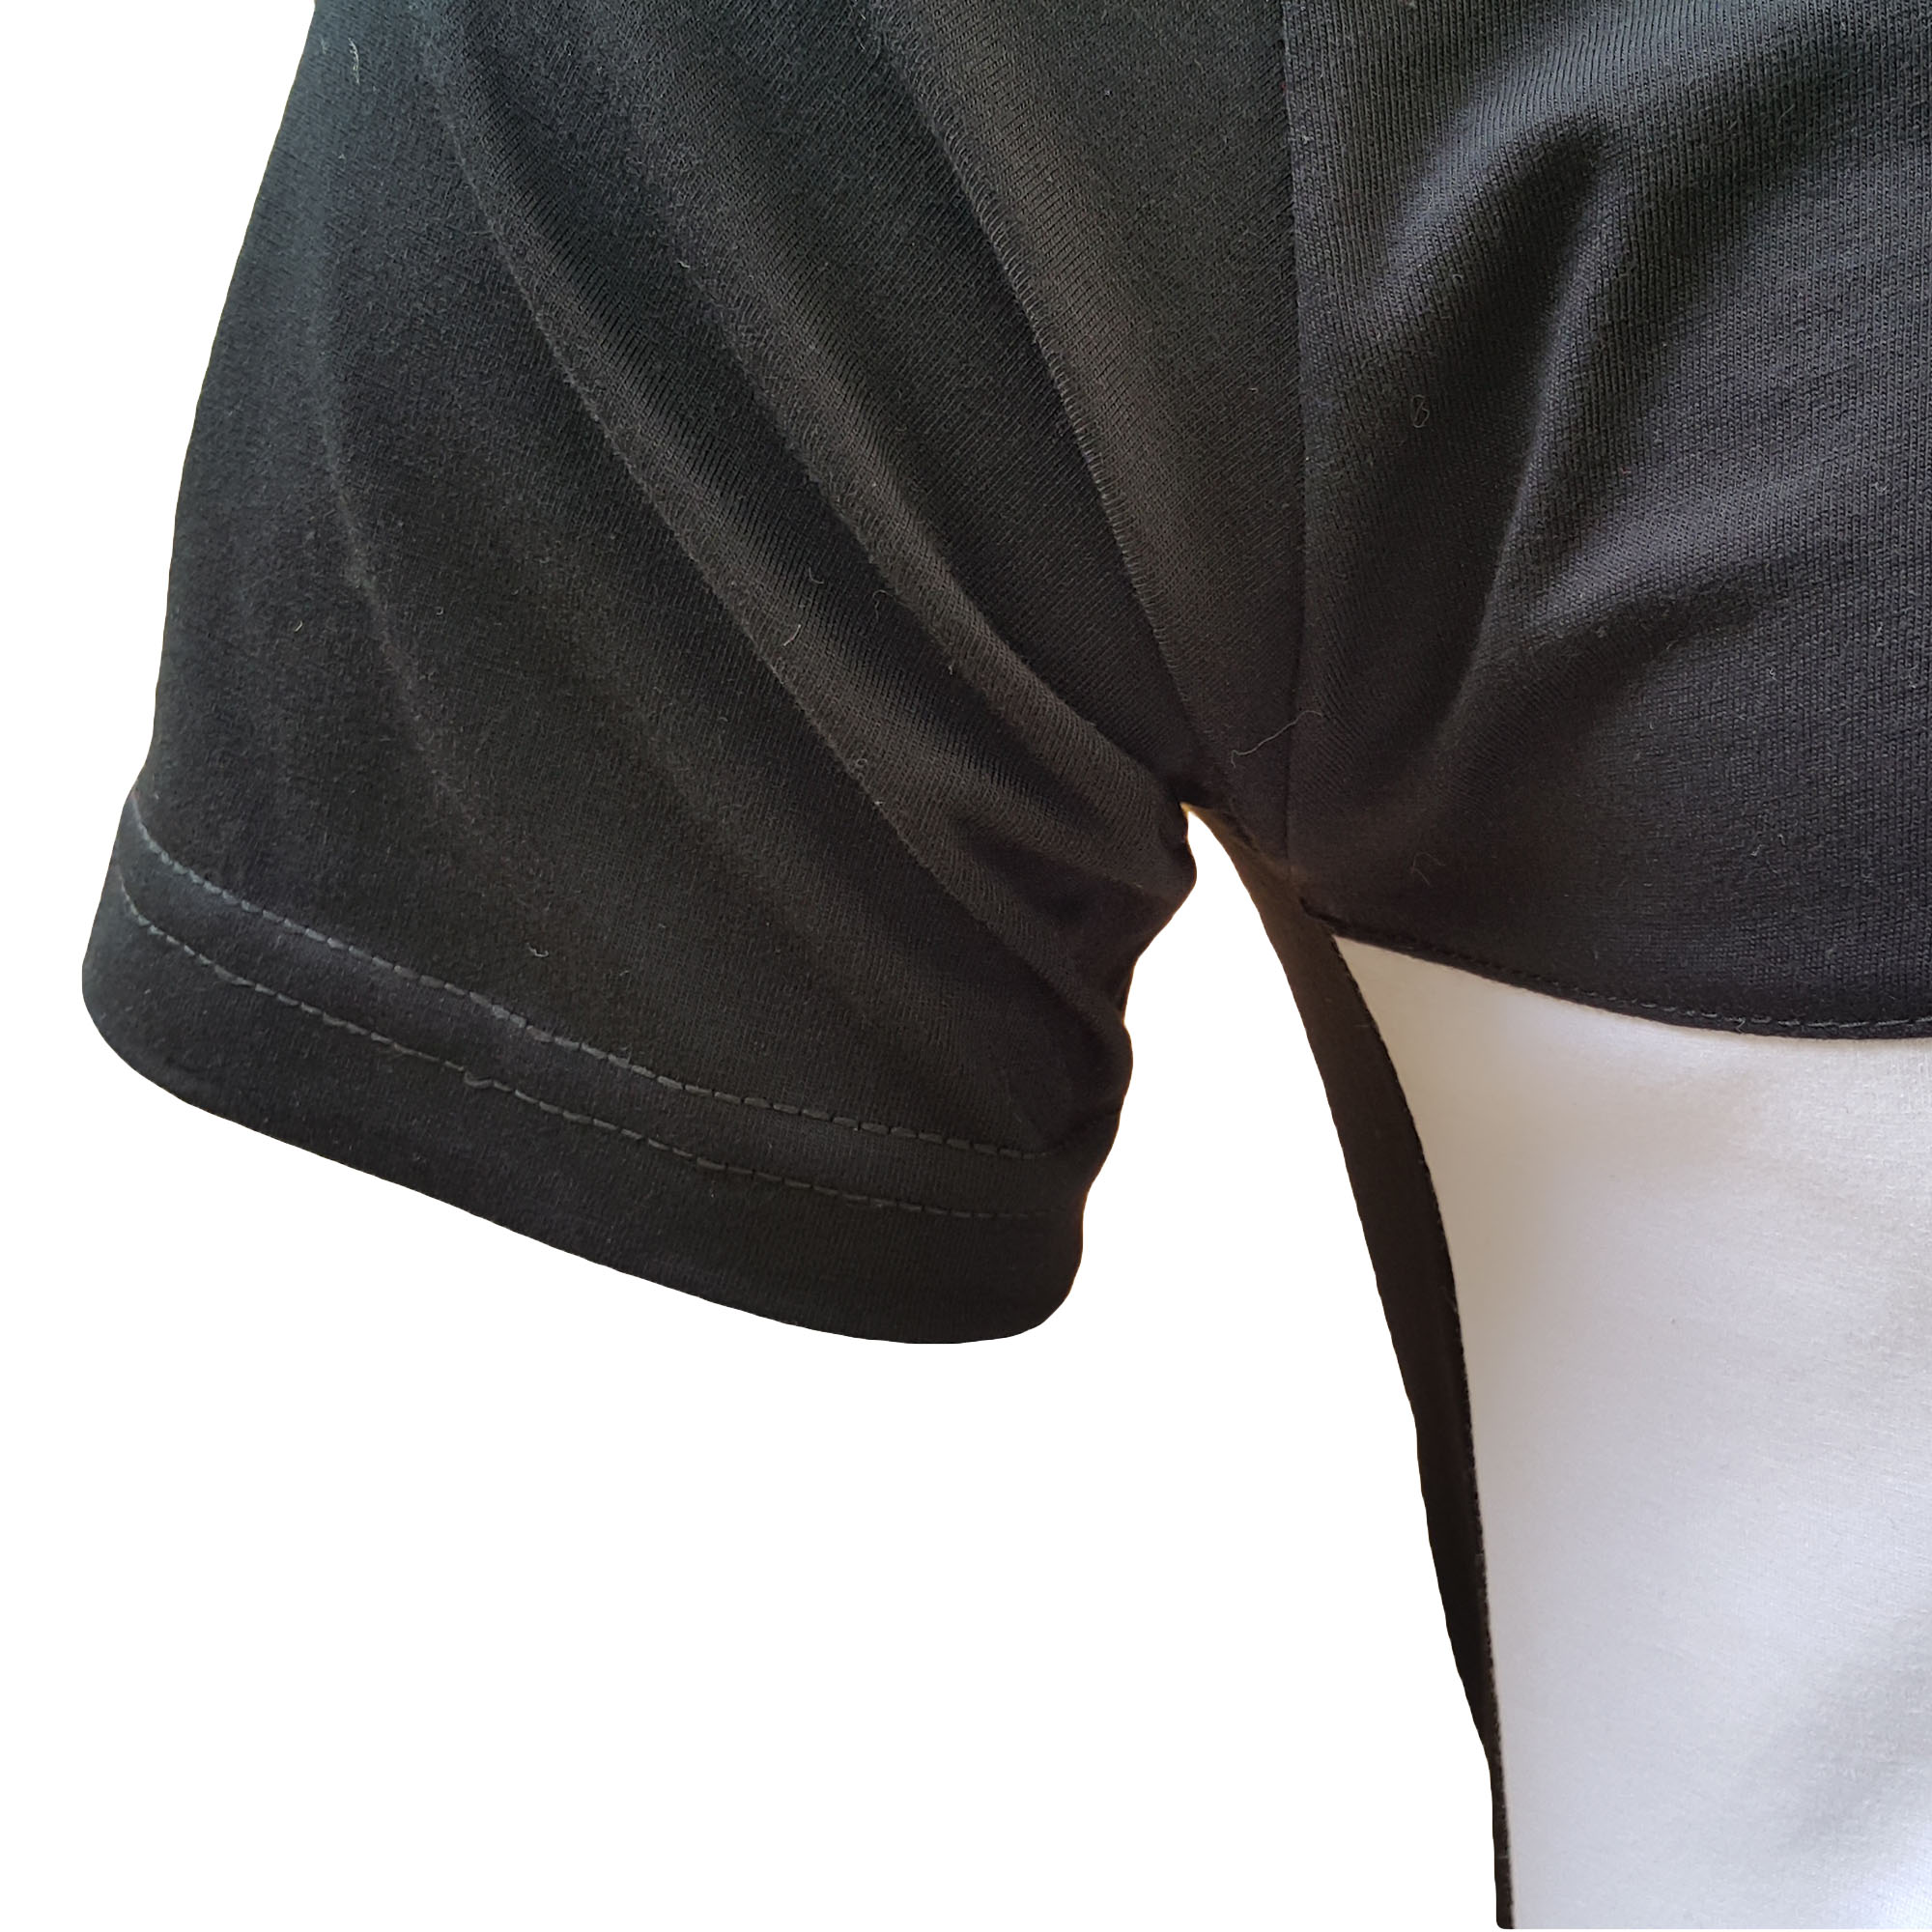 ست تیشرت و شلوار ورزشی مردانه طرح لیورپول کد 9901301s رنگ مشکی